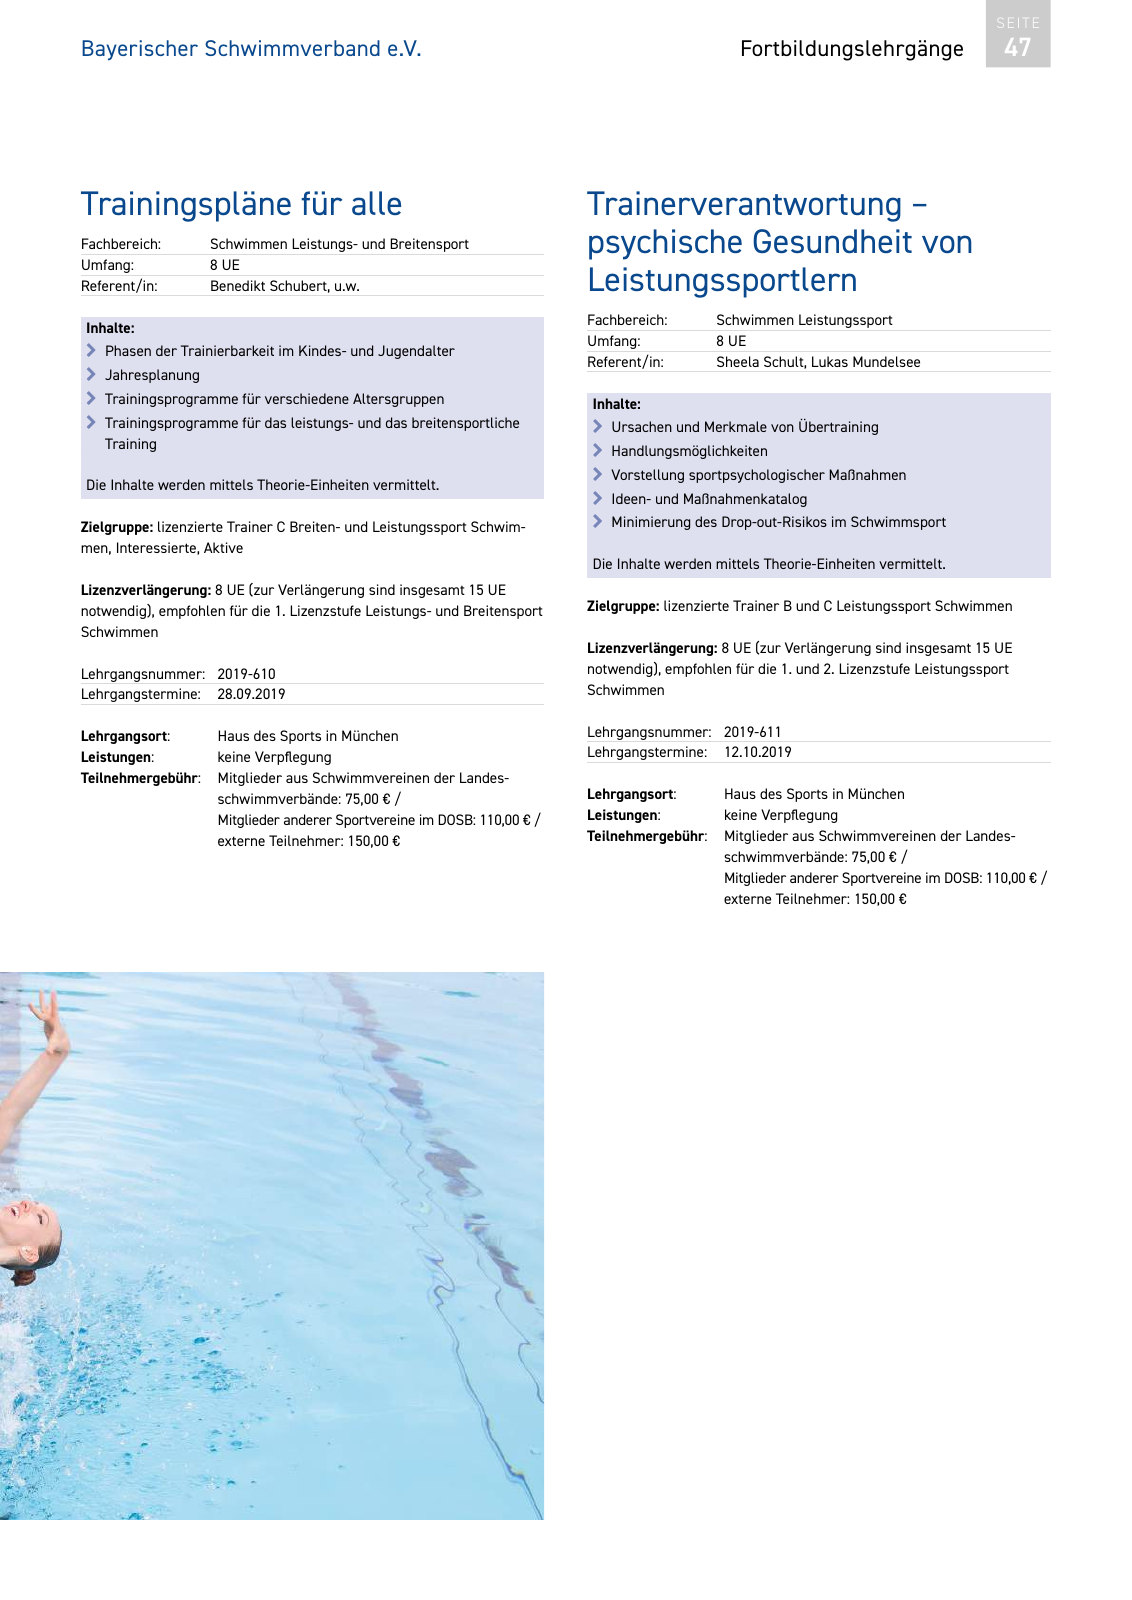 Vorschau Lehrgänge 2019 // Akademie des Schwimmsports Seite 47